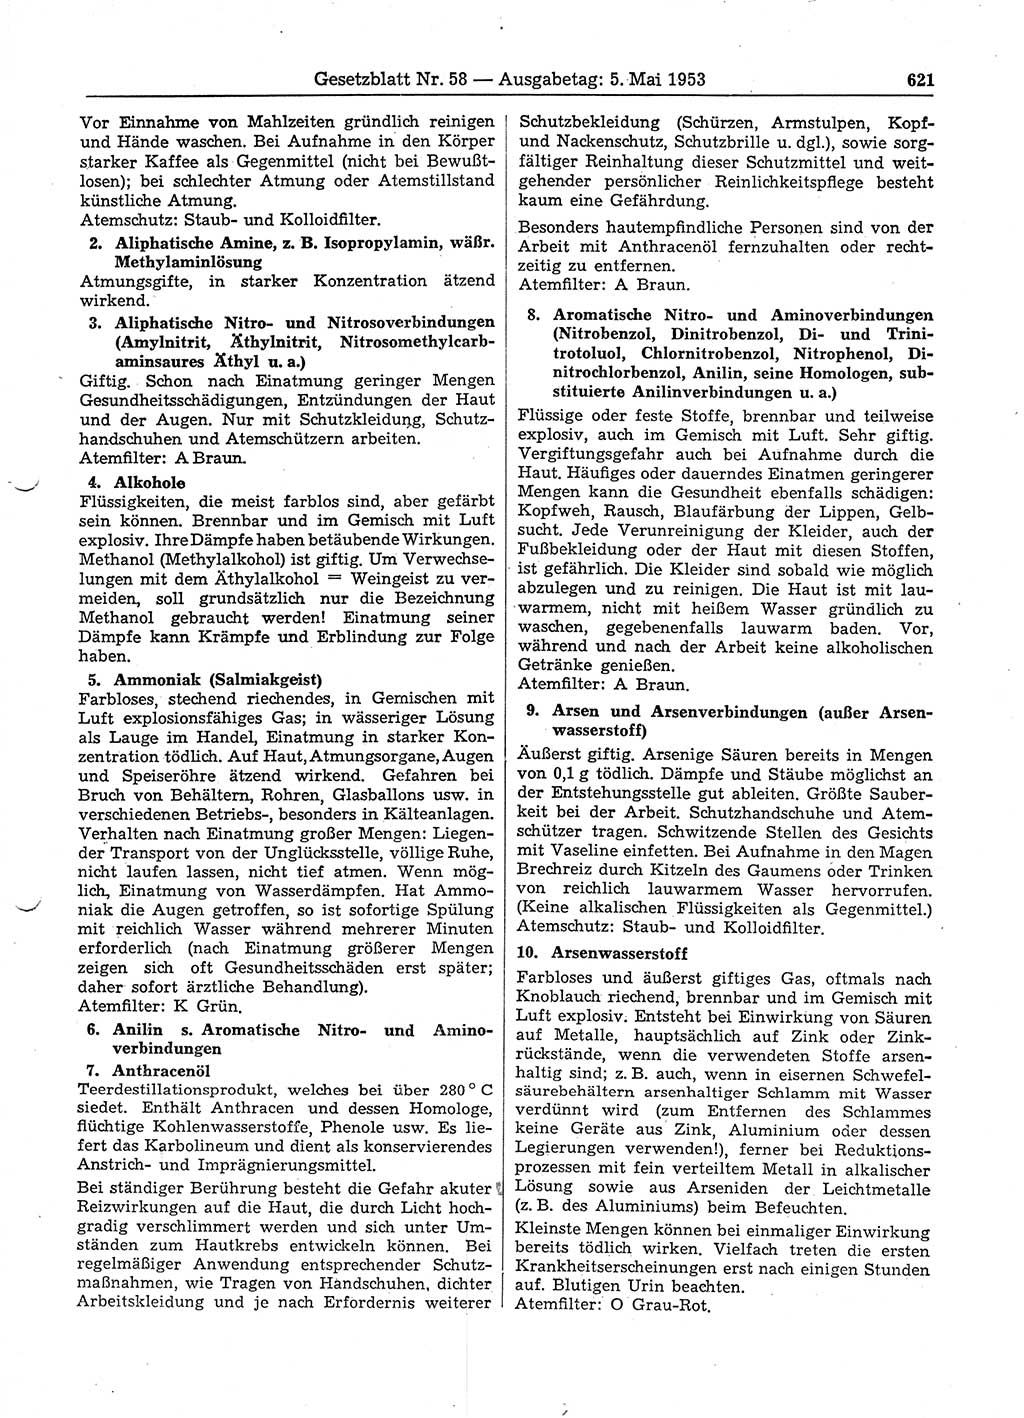 Gesetzblatt (GBl.) der Deutschen Demokratischen Republik (DDR) 1953, Seite 621 (GBl. DDR 1953, S. 621)